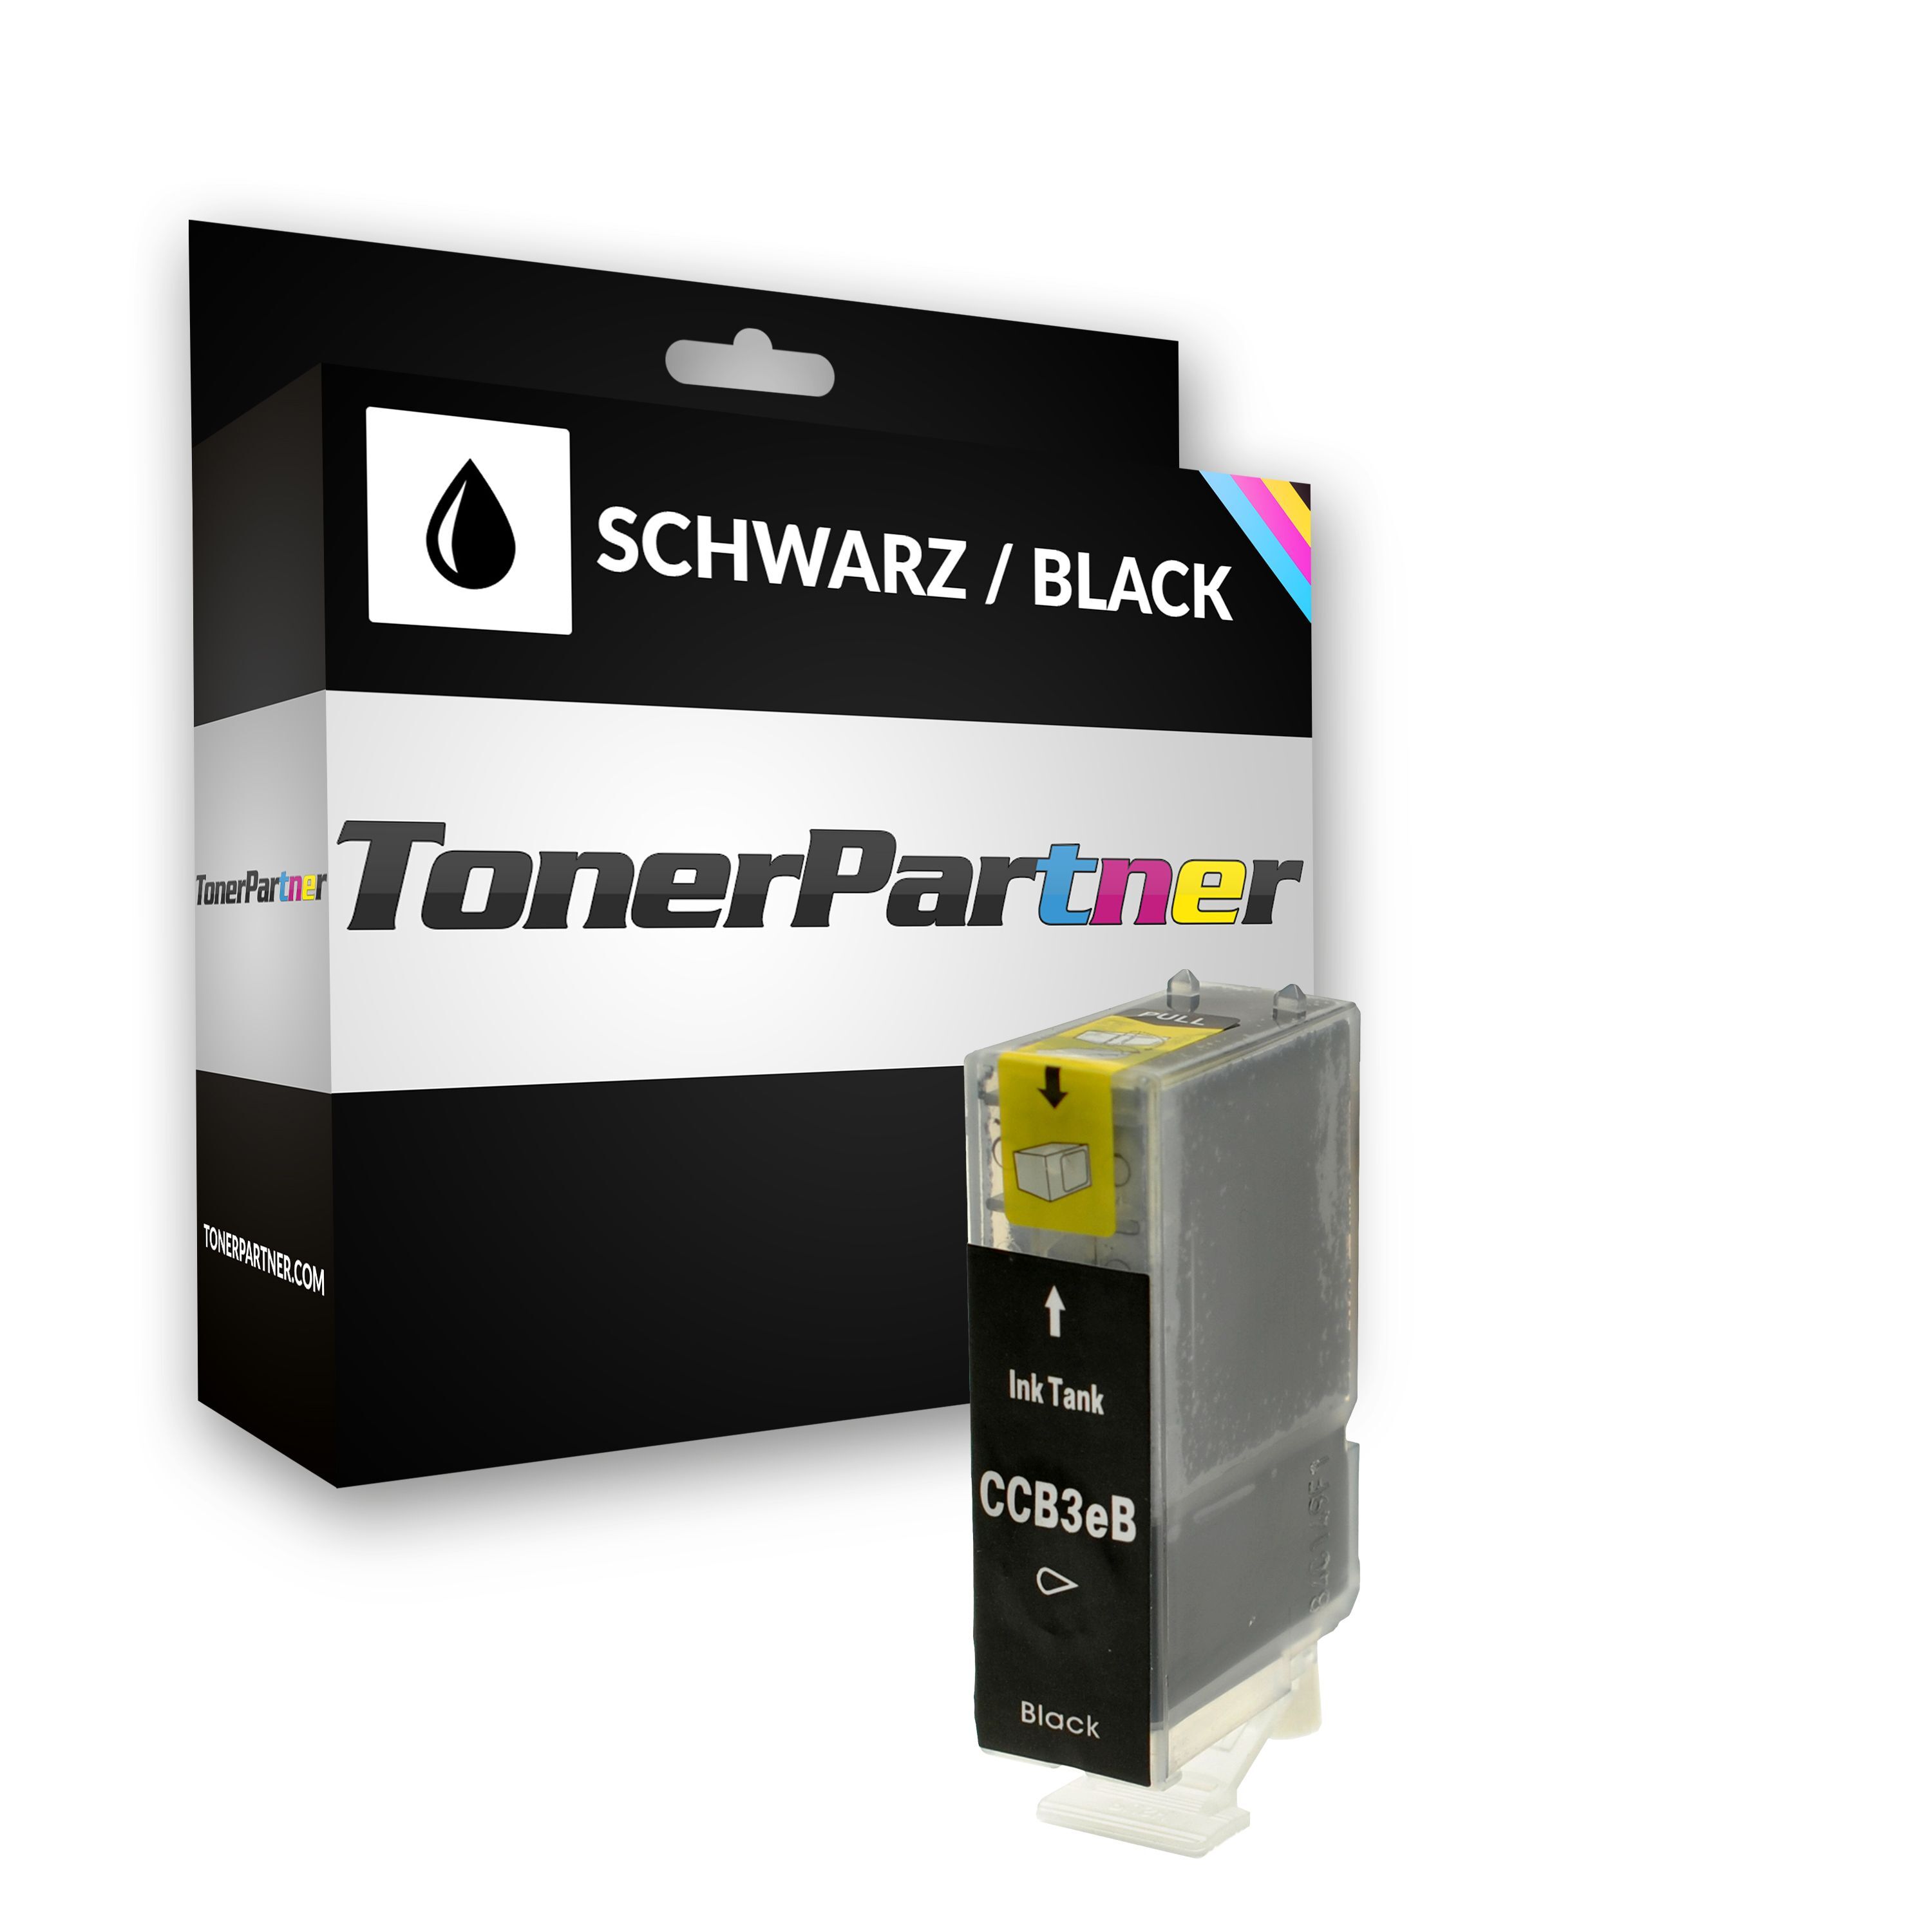 TonerPartner Kompatibel zu Canon S 630 N Tintenpatrone (BCI-3 EBK / 4479 A 002) schwarz, 500 Seiten, 0,51 Rp pro Seite, Inhalt: 27 ml von TonerPartner